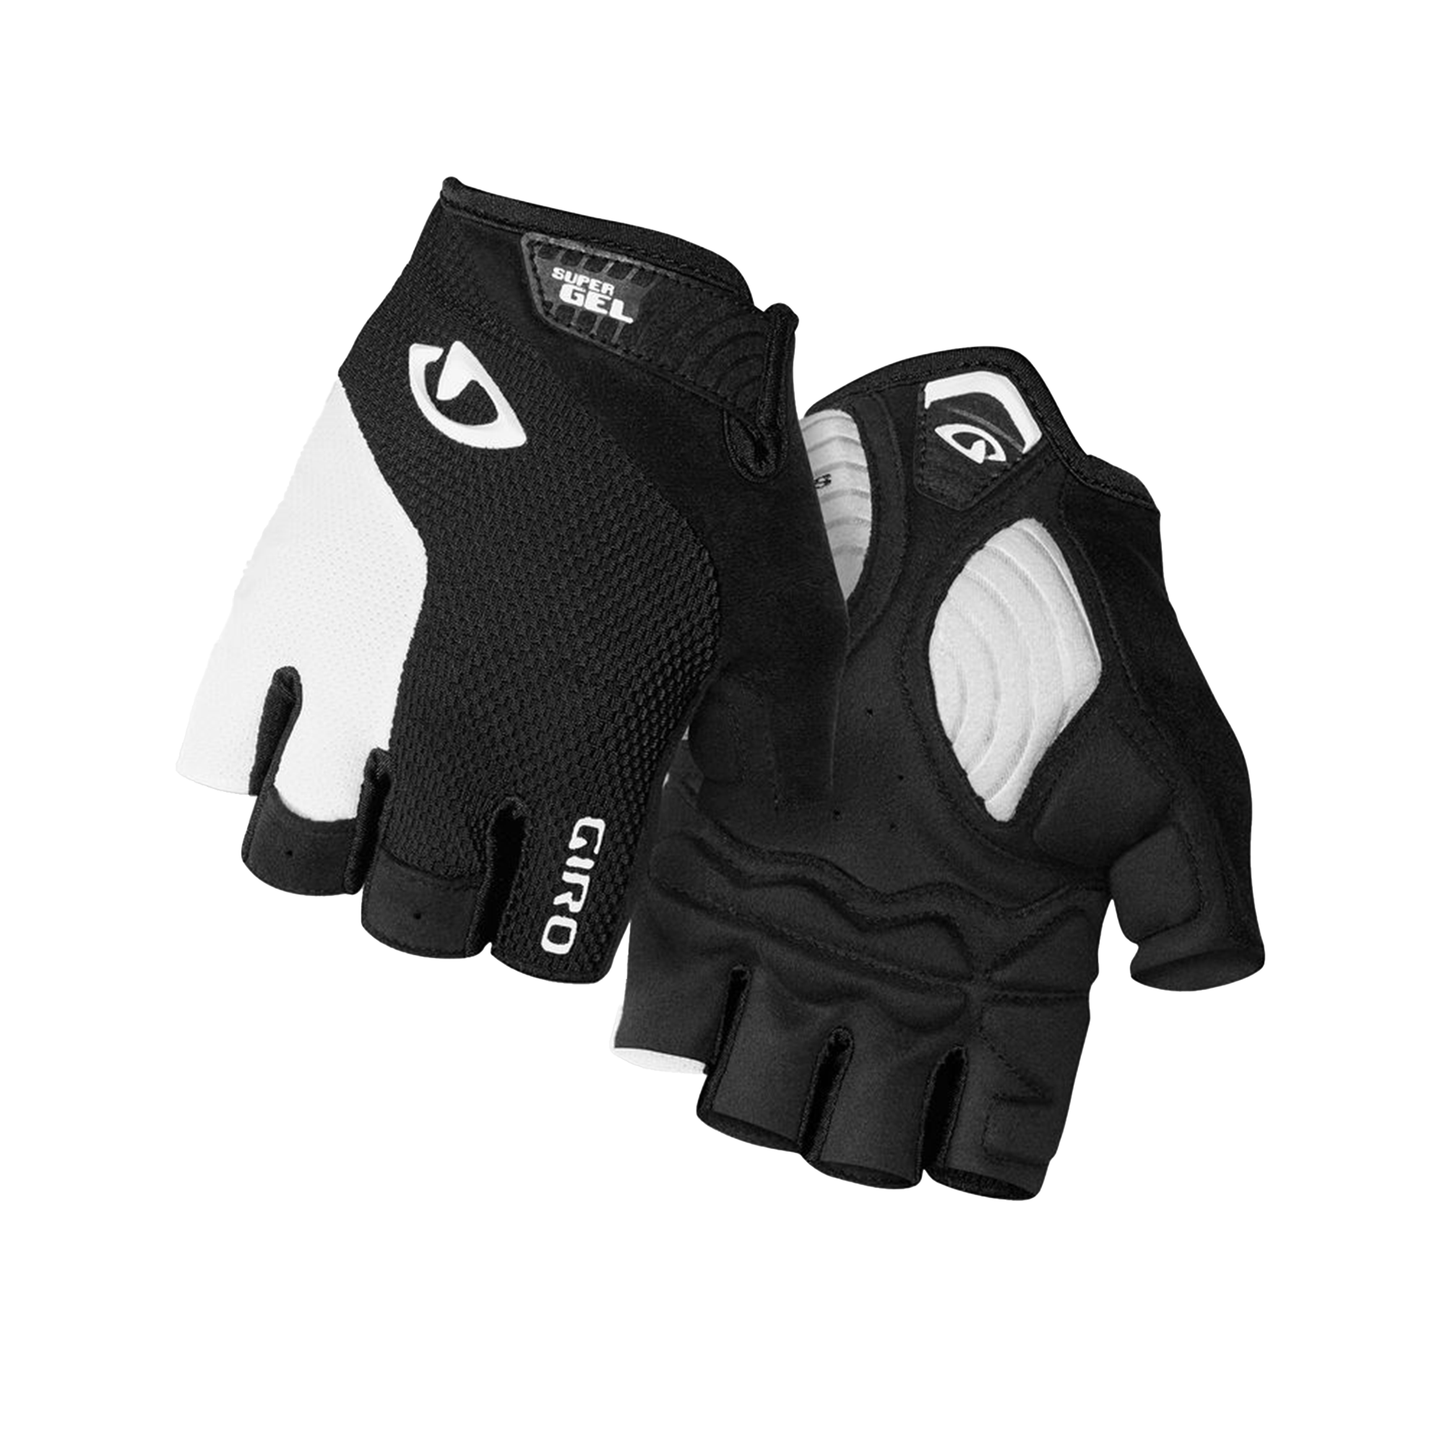 Giro Men's Strade Dure SG Glove Black/White Bike Gloves